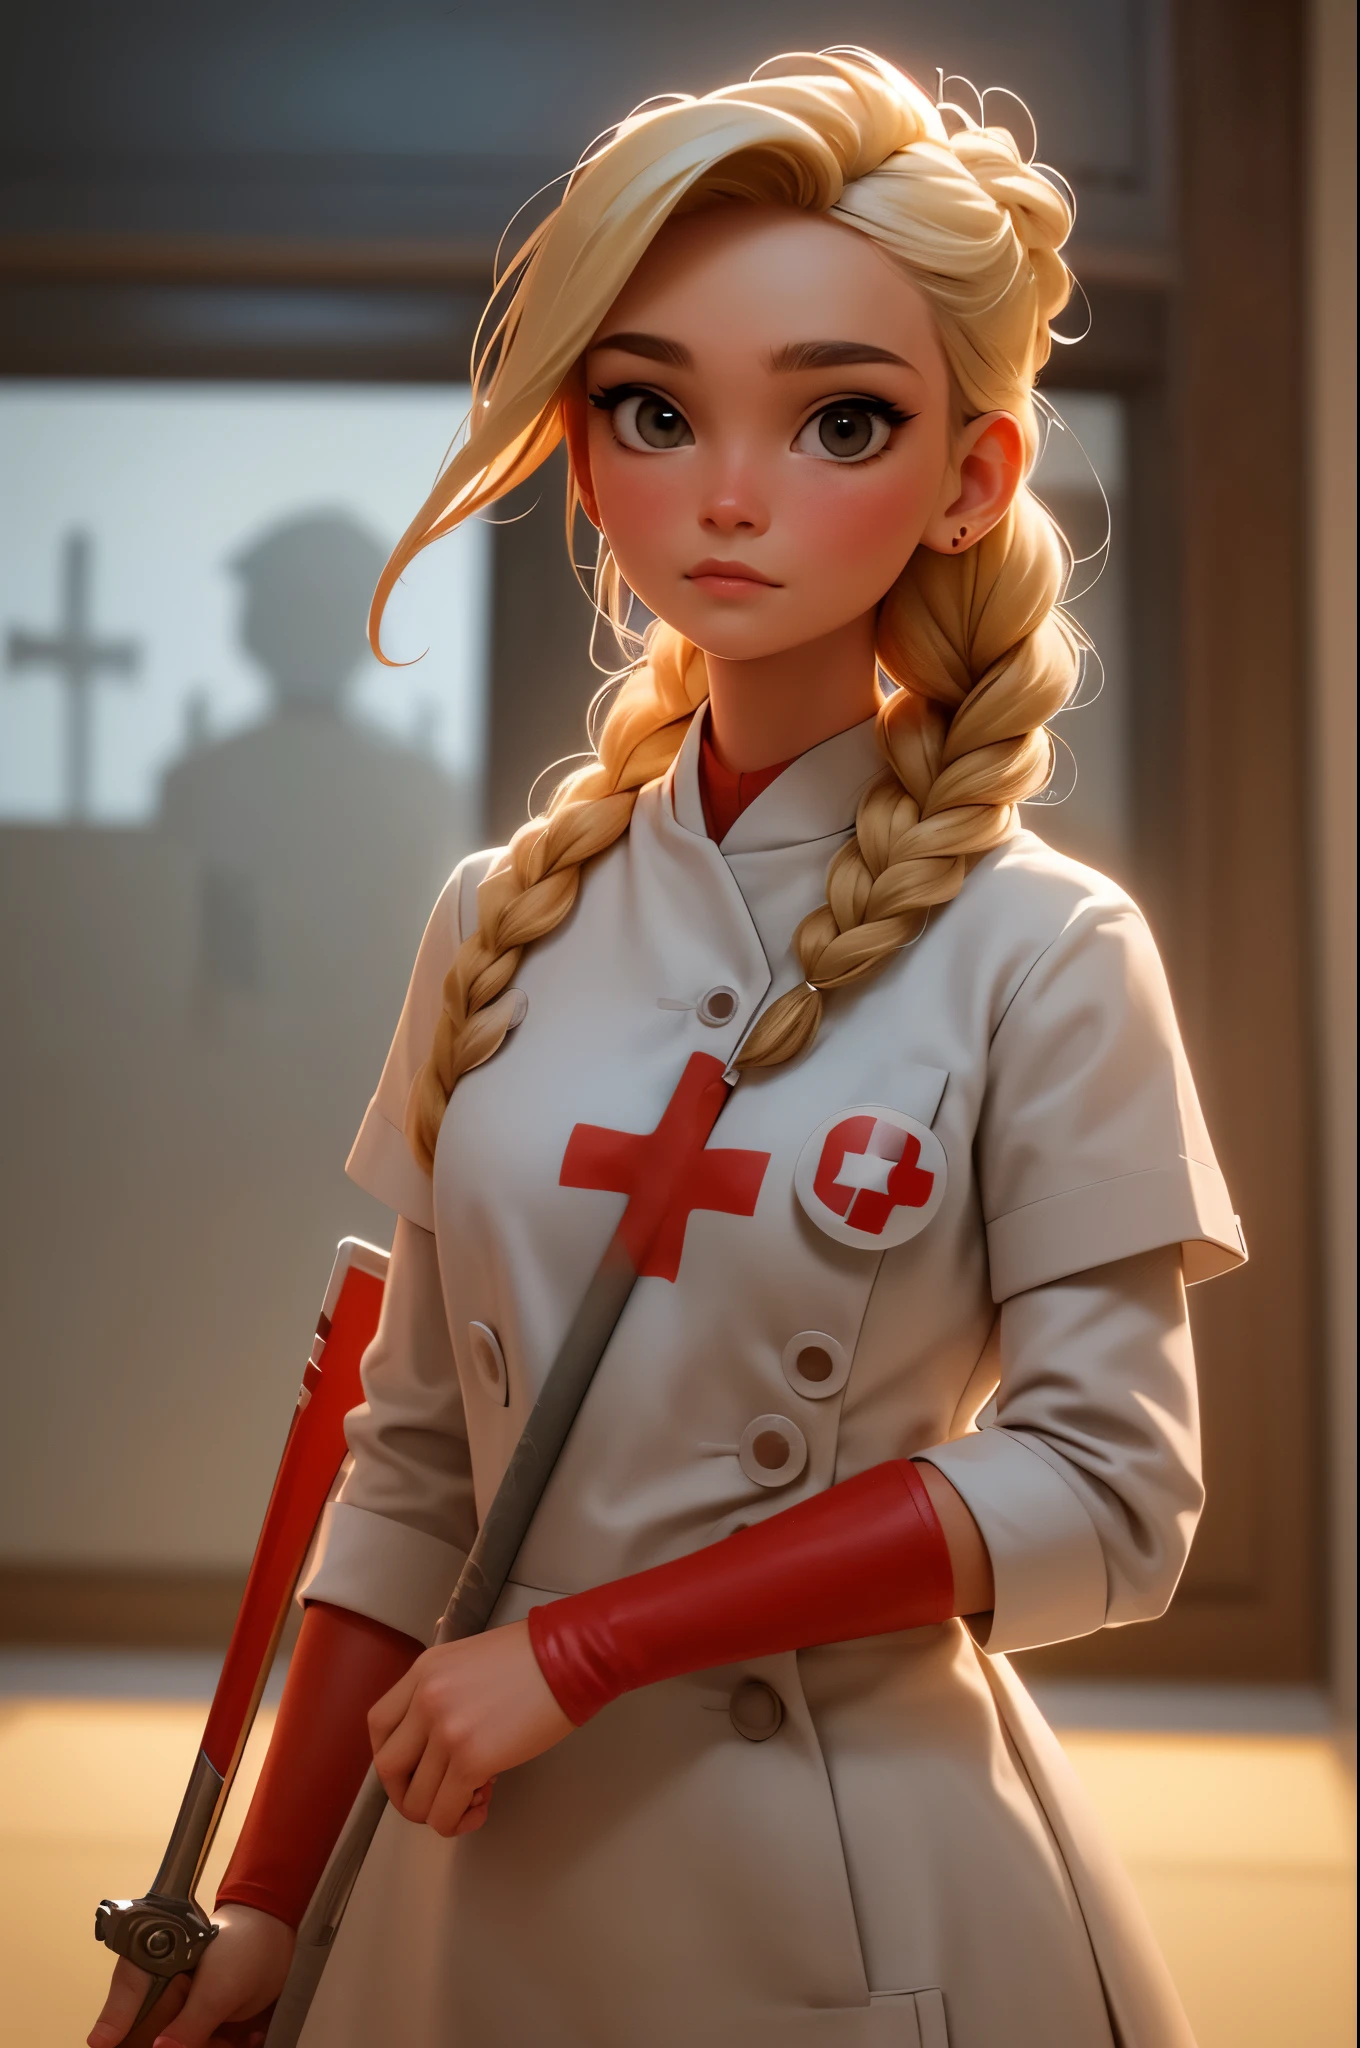 여자 1명, 금발로 땋은 머리, Warrior 간호사 with sword on the battlefield, 적십자 기호가 있는 광택 있는 흰색 가죽을 입은 모습, 간호사.